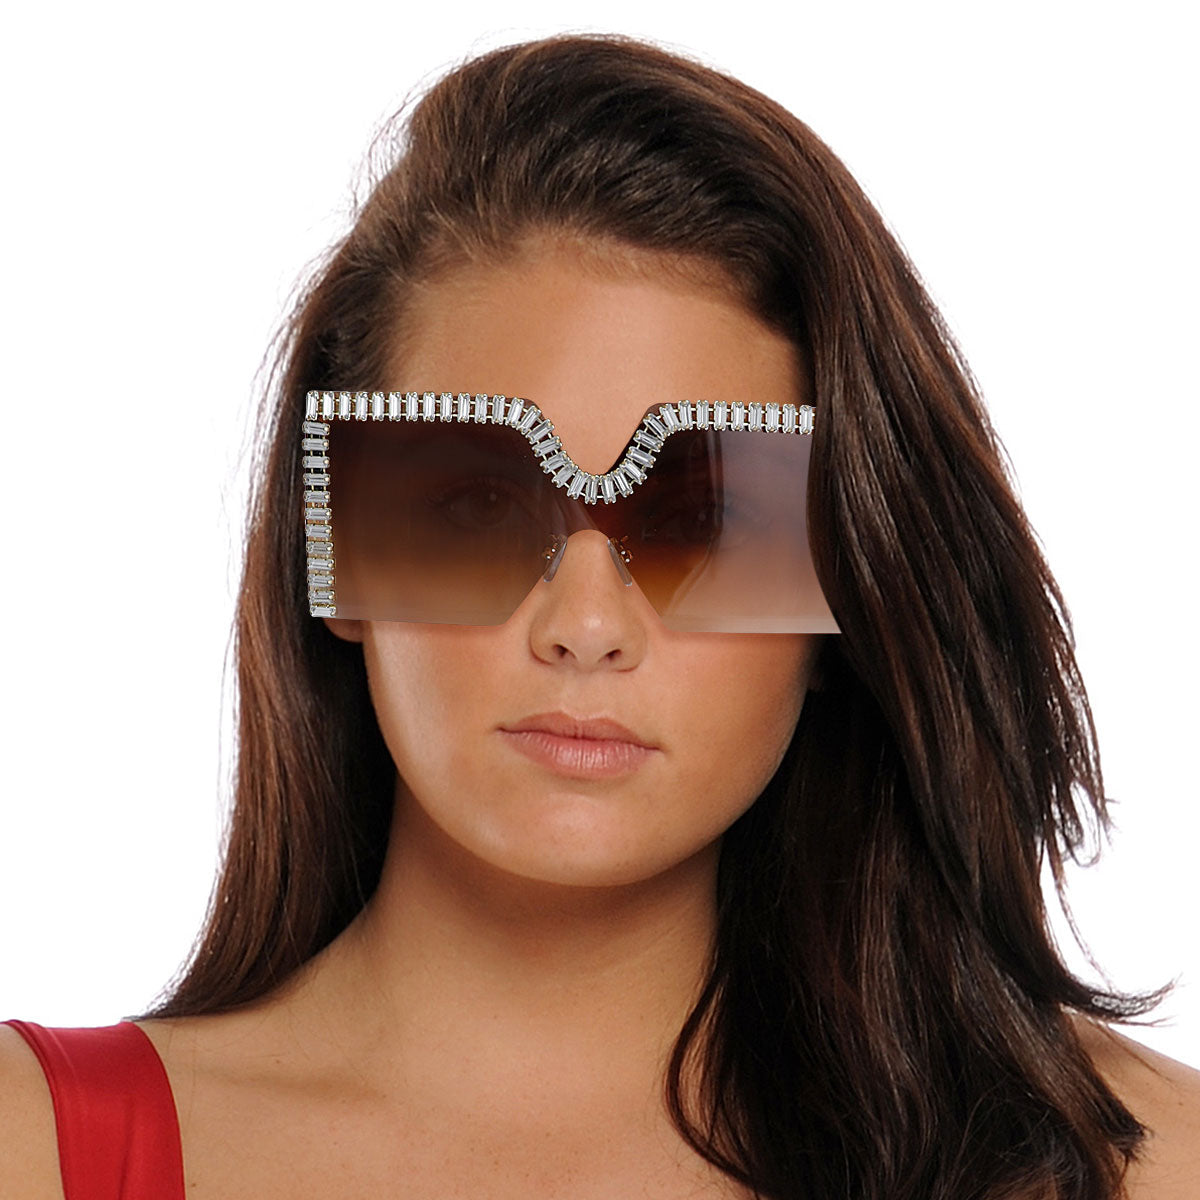 Brown Baguette Stone Square Sunglasses